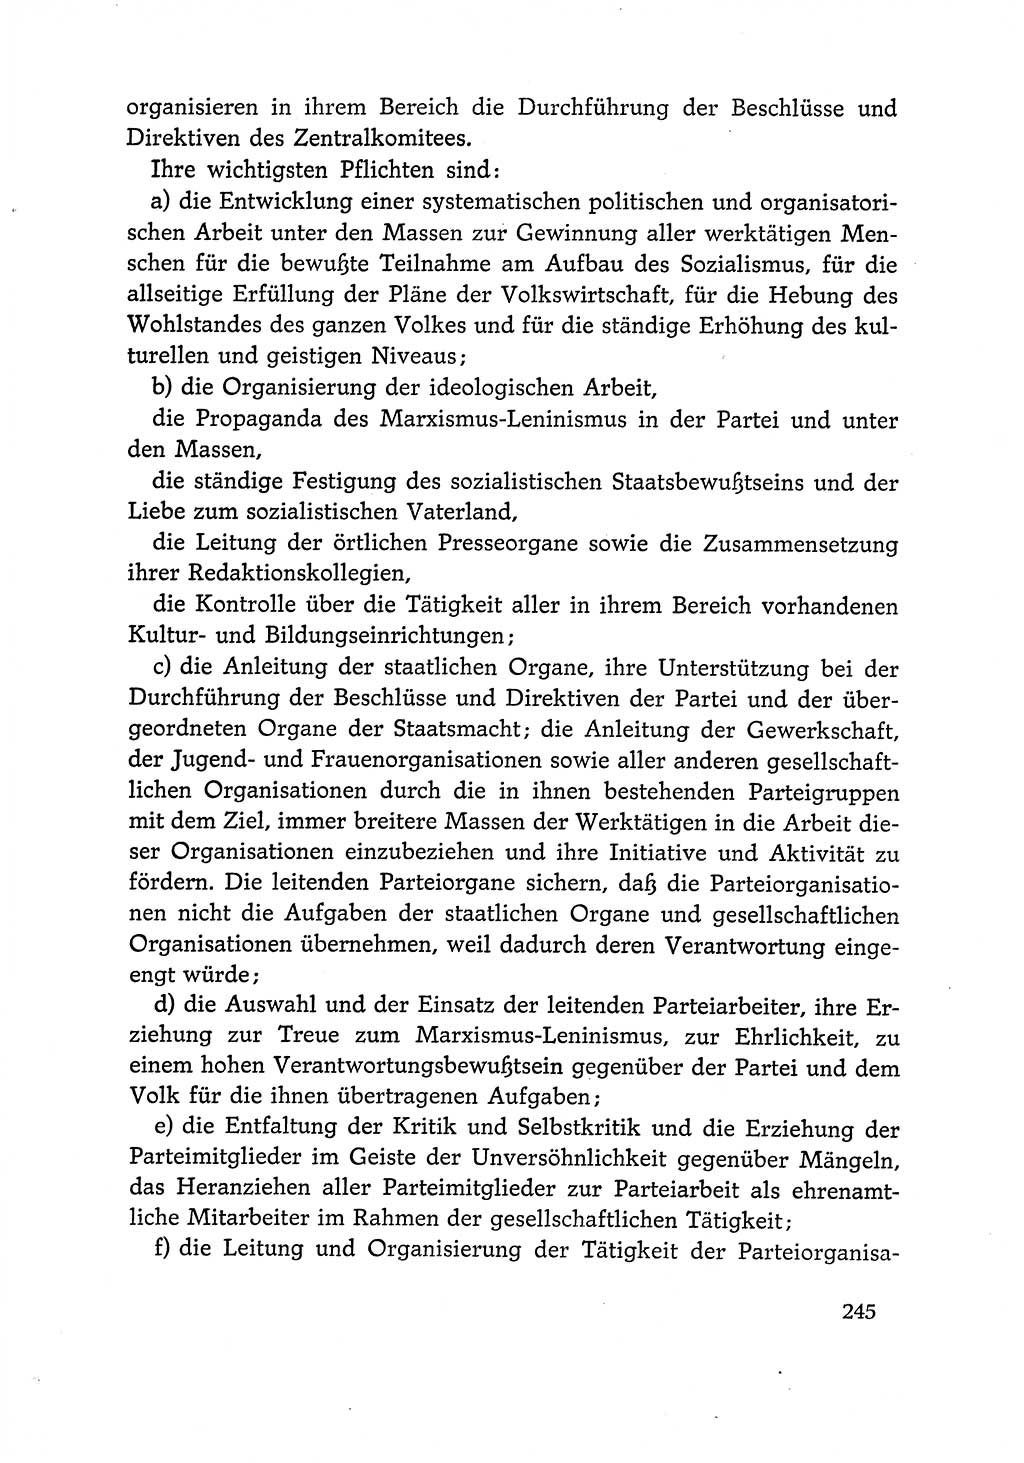 Dokumente der Sozialistischen Einheitspartei Deutschlands (SED) [Deutsche Demokratische Republik (DDR)] 1966-1967, Seite 245 (Dok. SED DDR 1966-1967, S. 245)